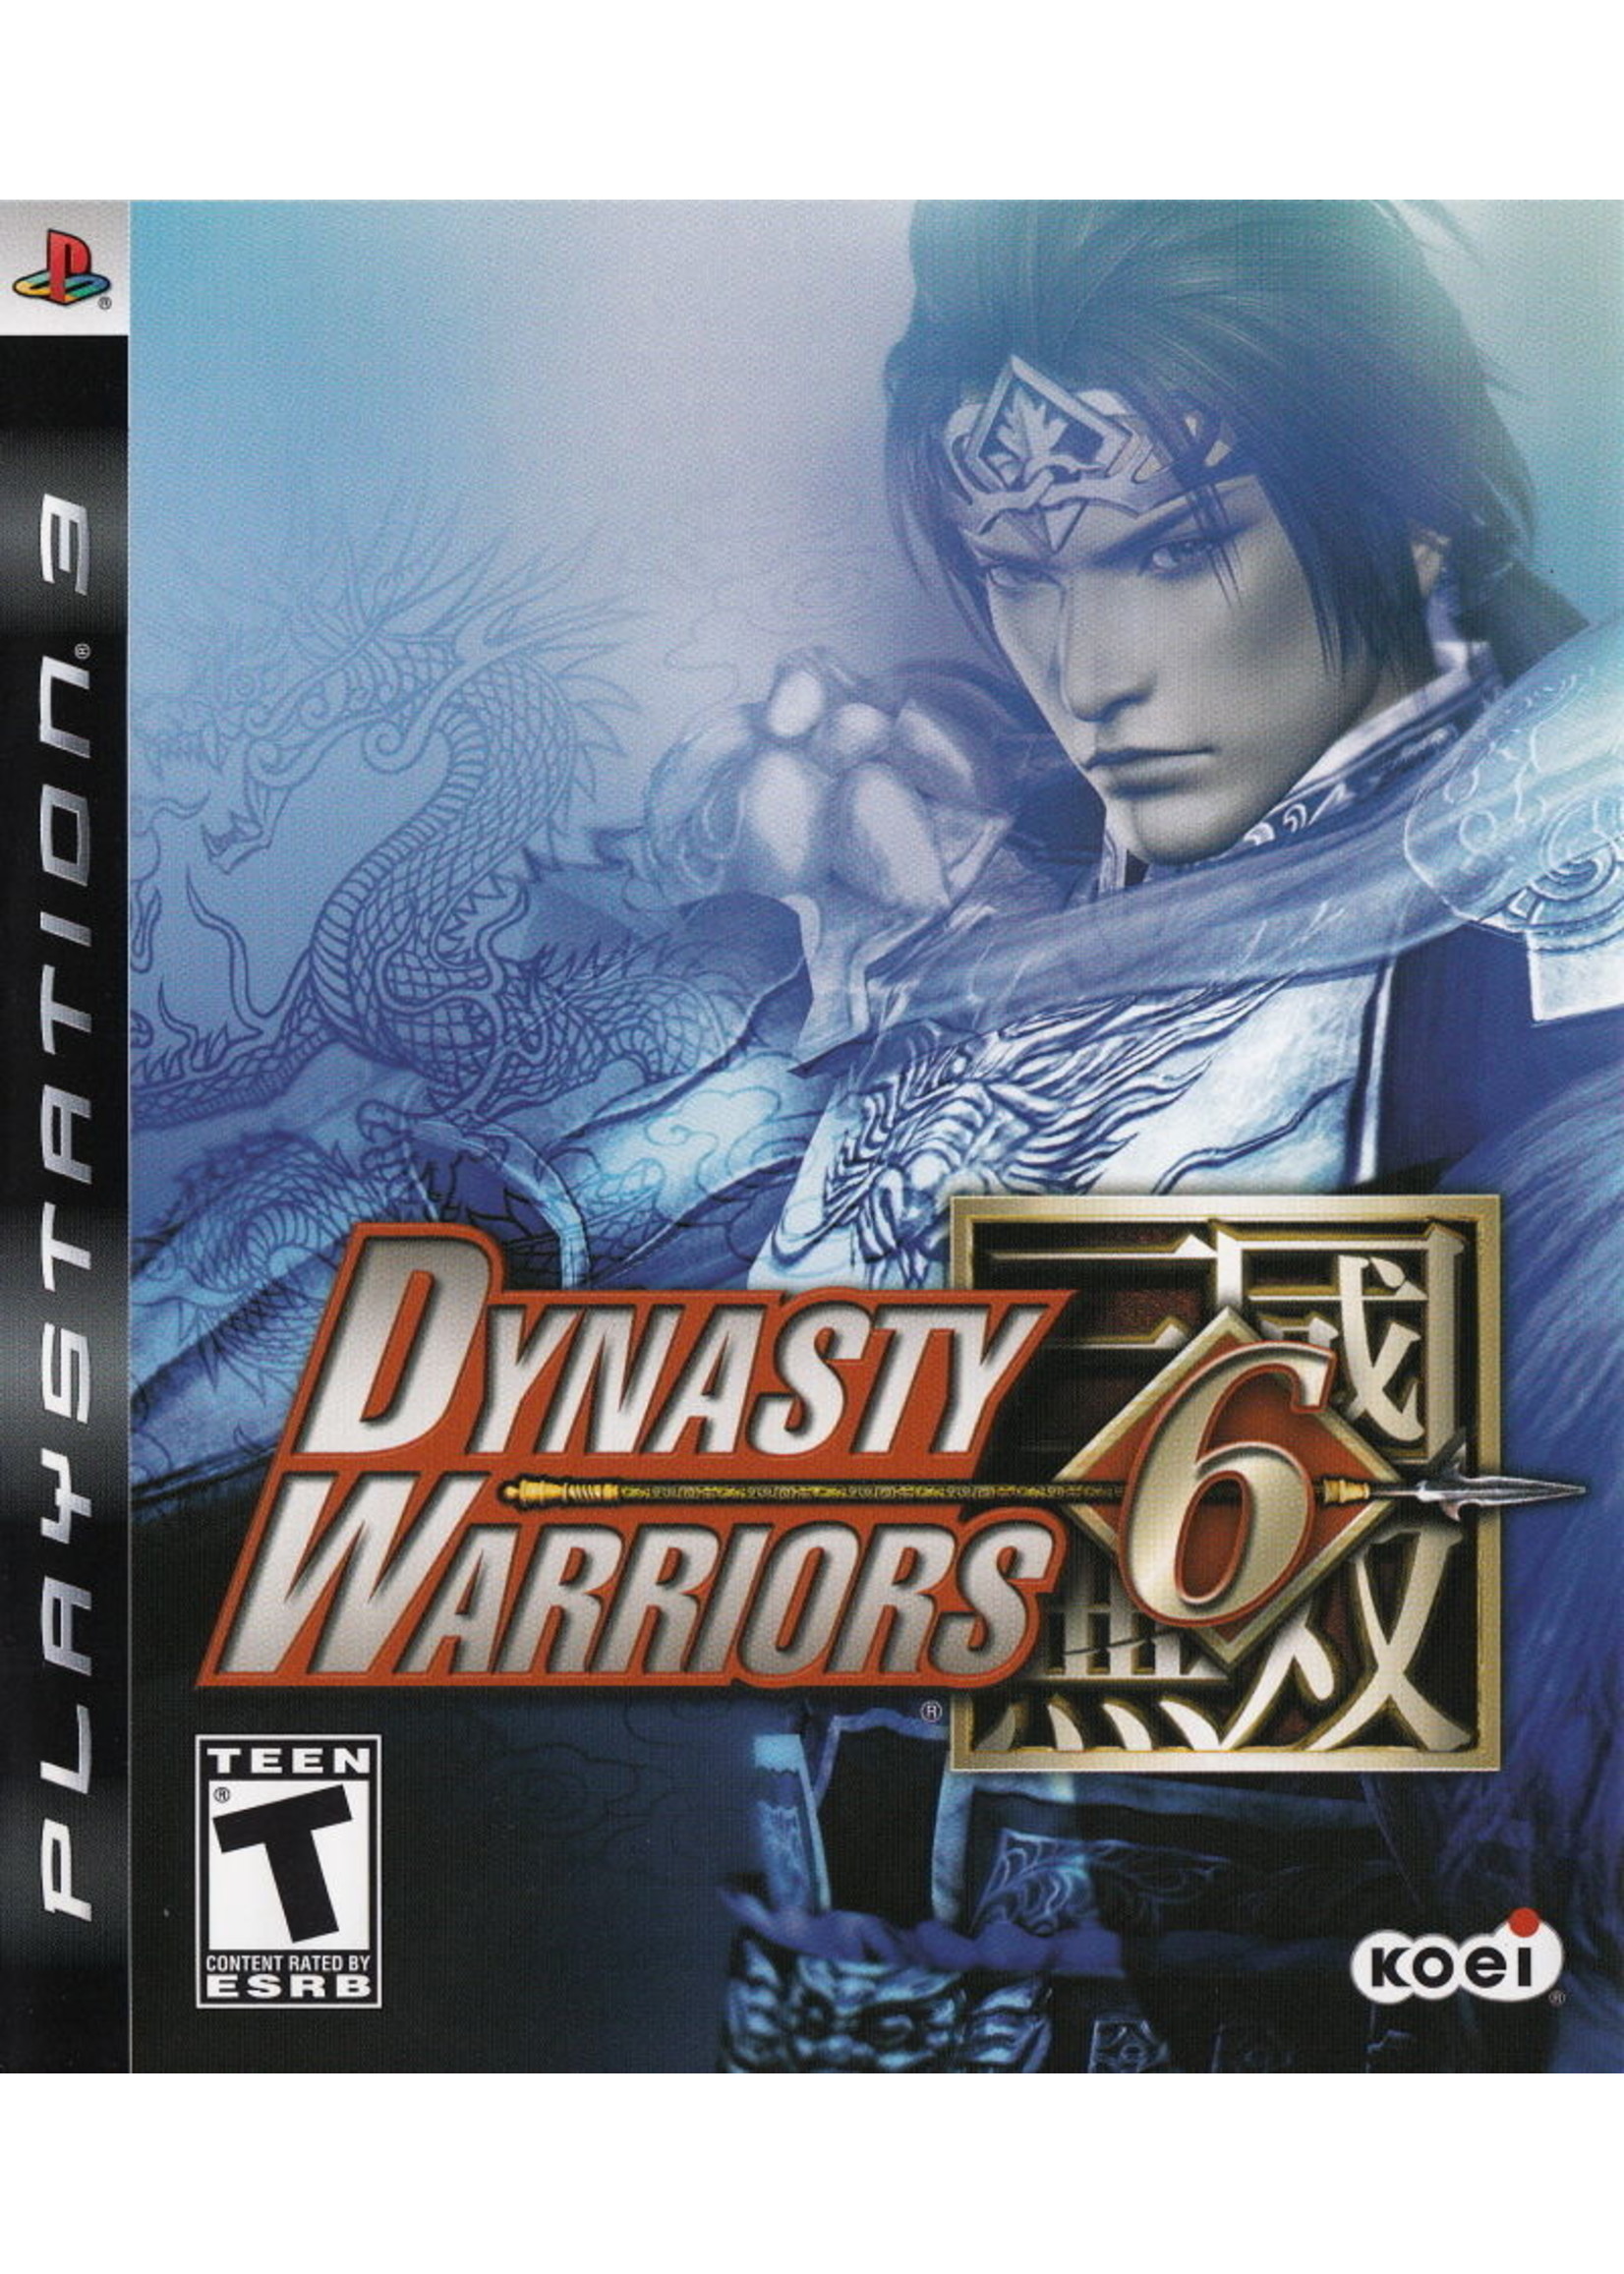 Sony Playstation 3 (PS3) Dynasty Warriors 6